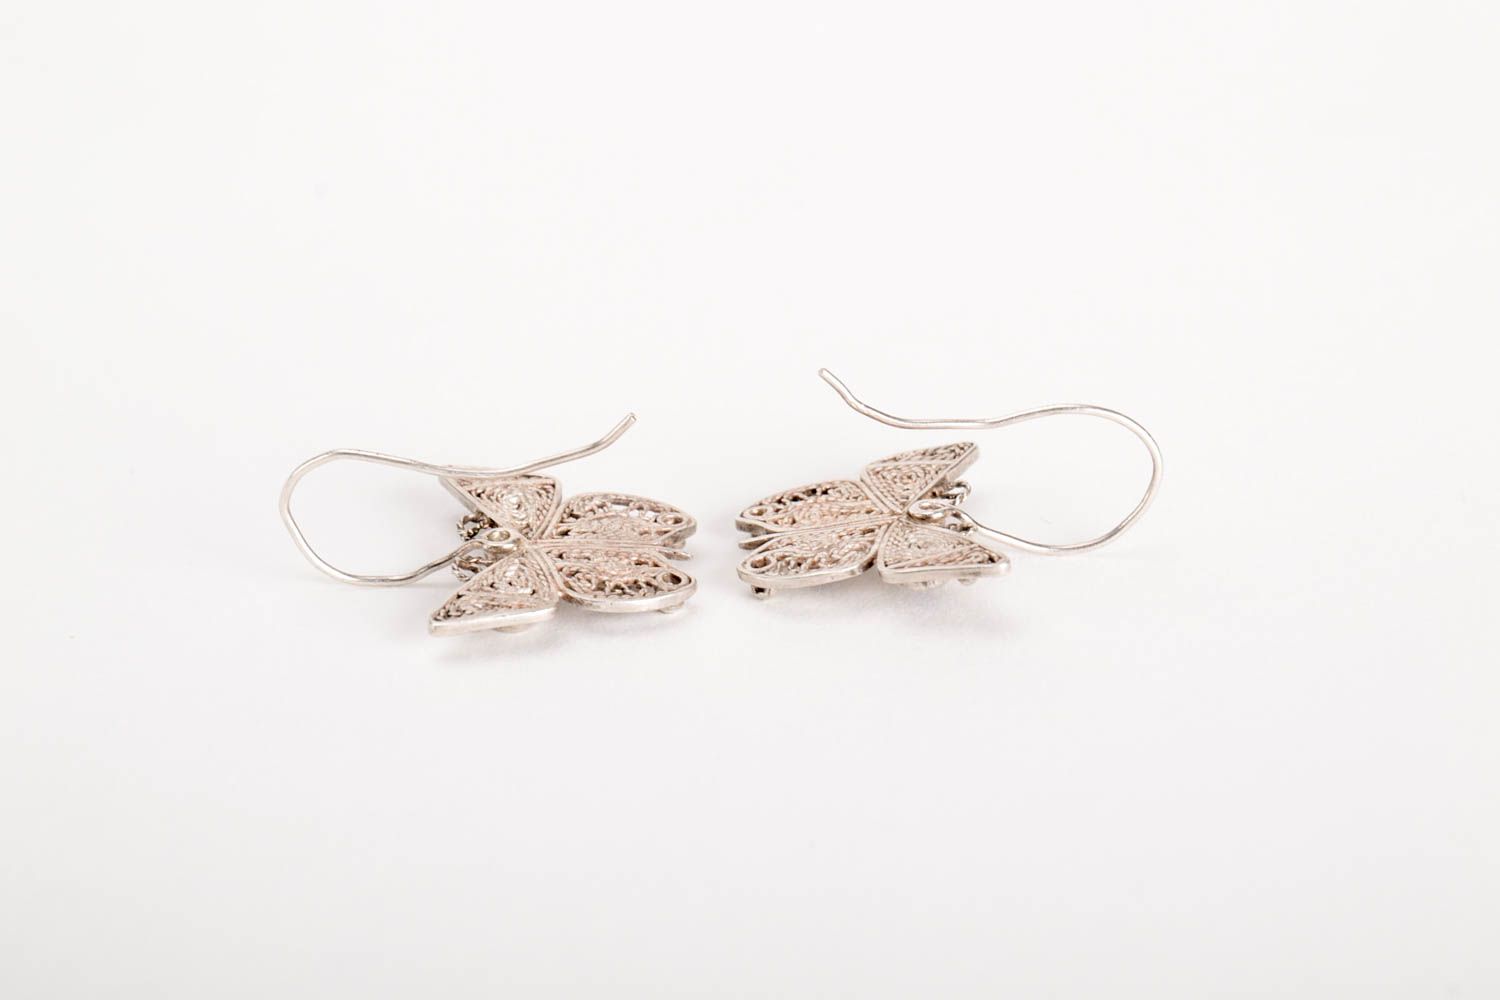 Handmade earrings unusual earrings silver earrings for women gift ideas photo 3